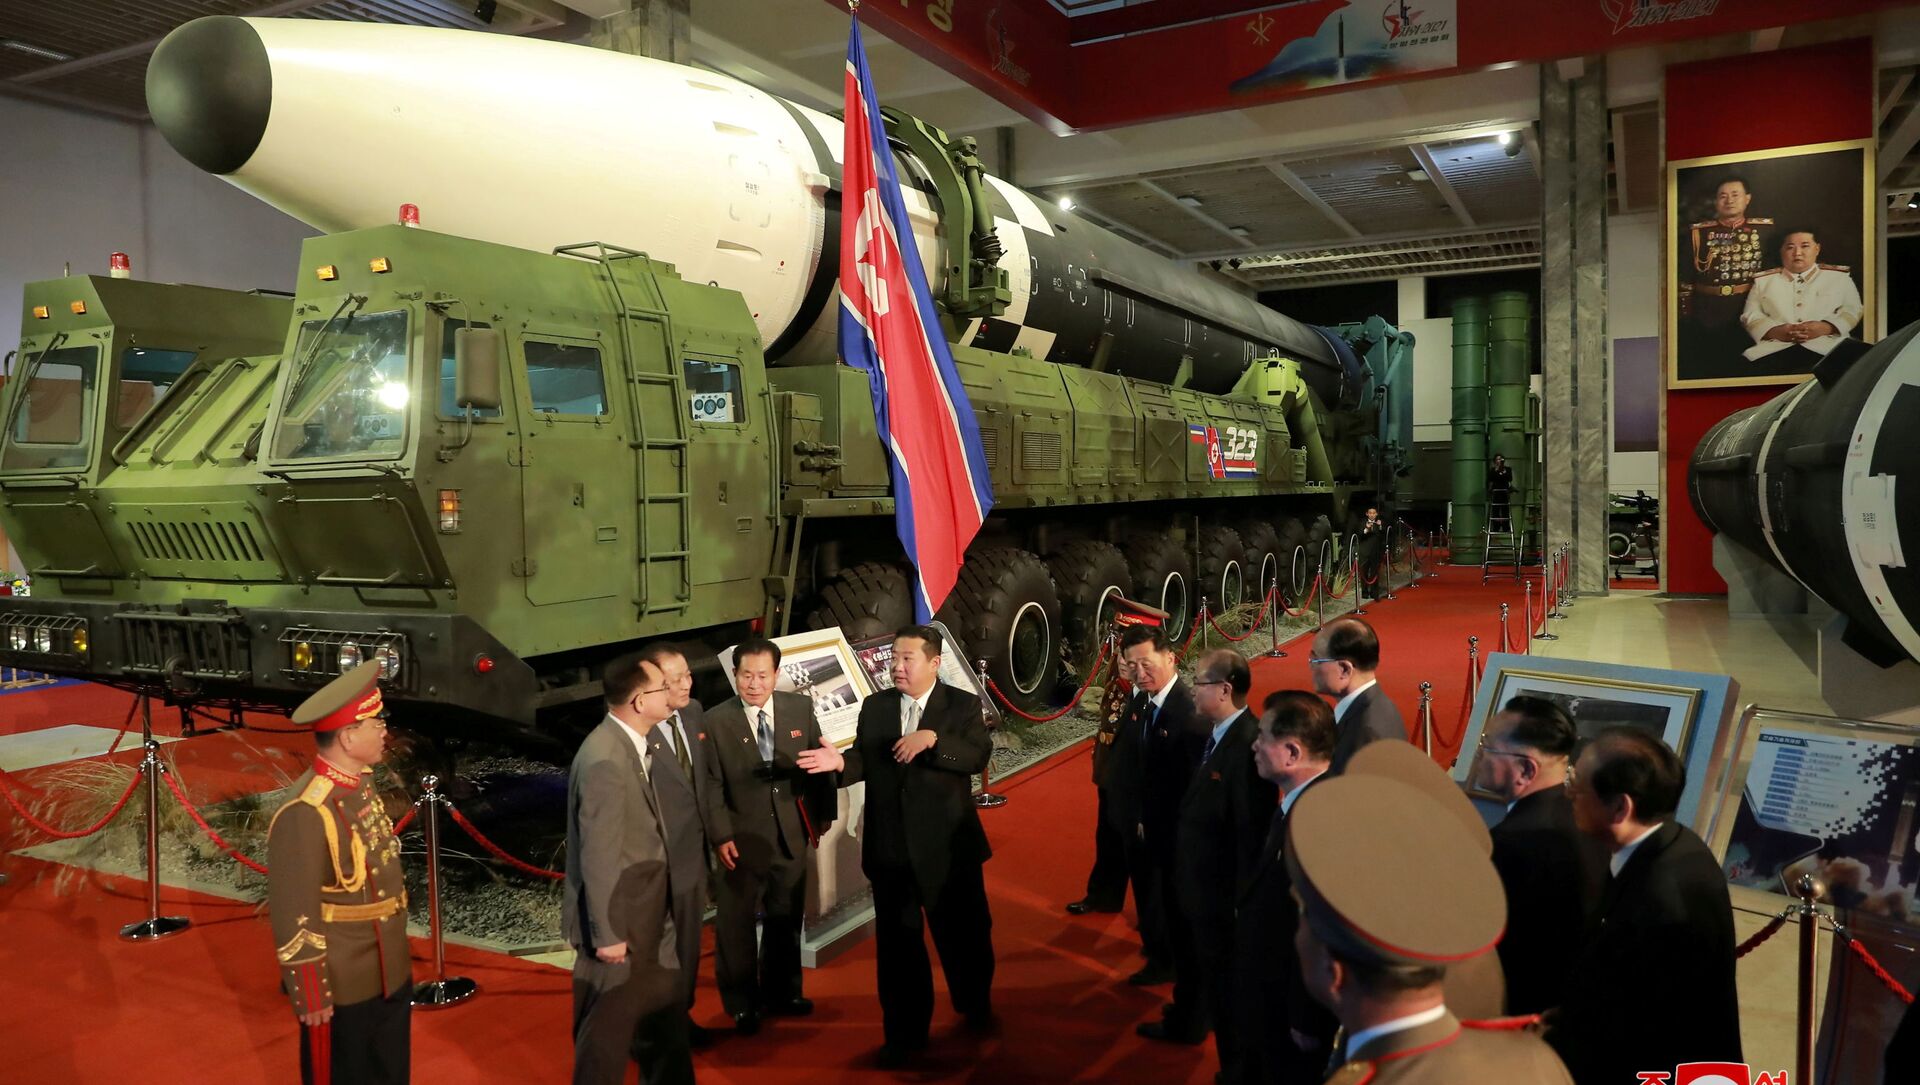 زعيم كوريا الشمالية كيم جونغ أون إلى المسؤولين بجوار الأسلحة والمركبات العسكرية المعروضة، بما في ذلك الصواريخ الباليستية العابرة للقارات (ICBM)، في معرض تطوير الدفاع، في بيونغ يانغ، كوريا الشمالية، 12 أكتوبر 2021 . - سبوتنيك عربي, 1920, 21.10.2021